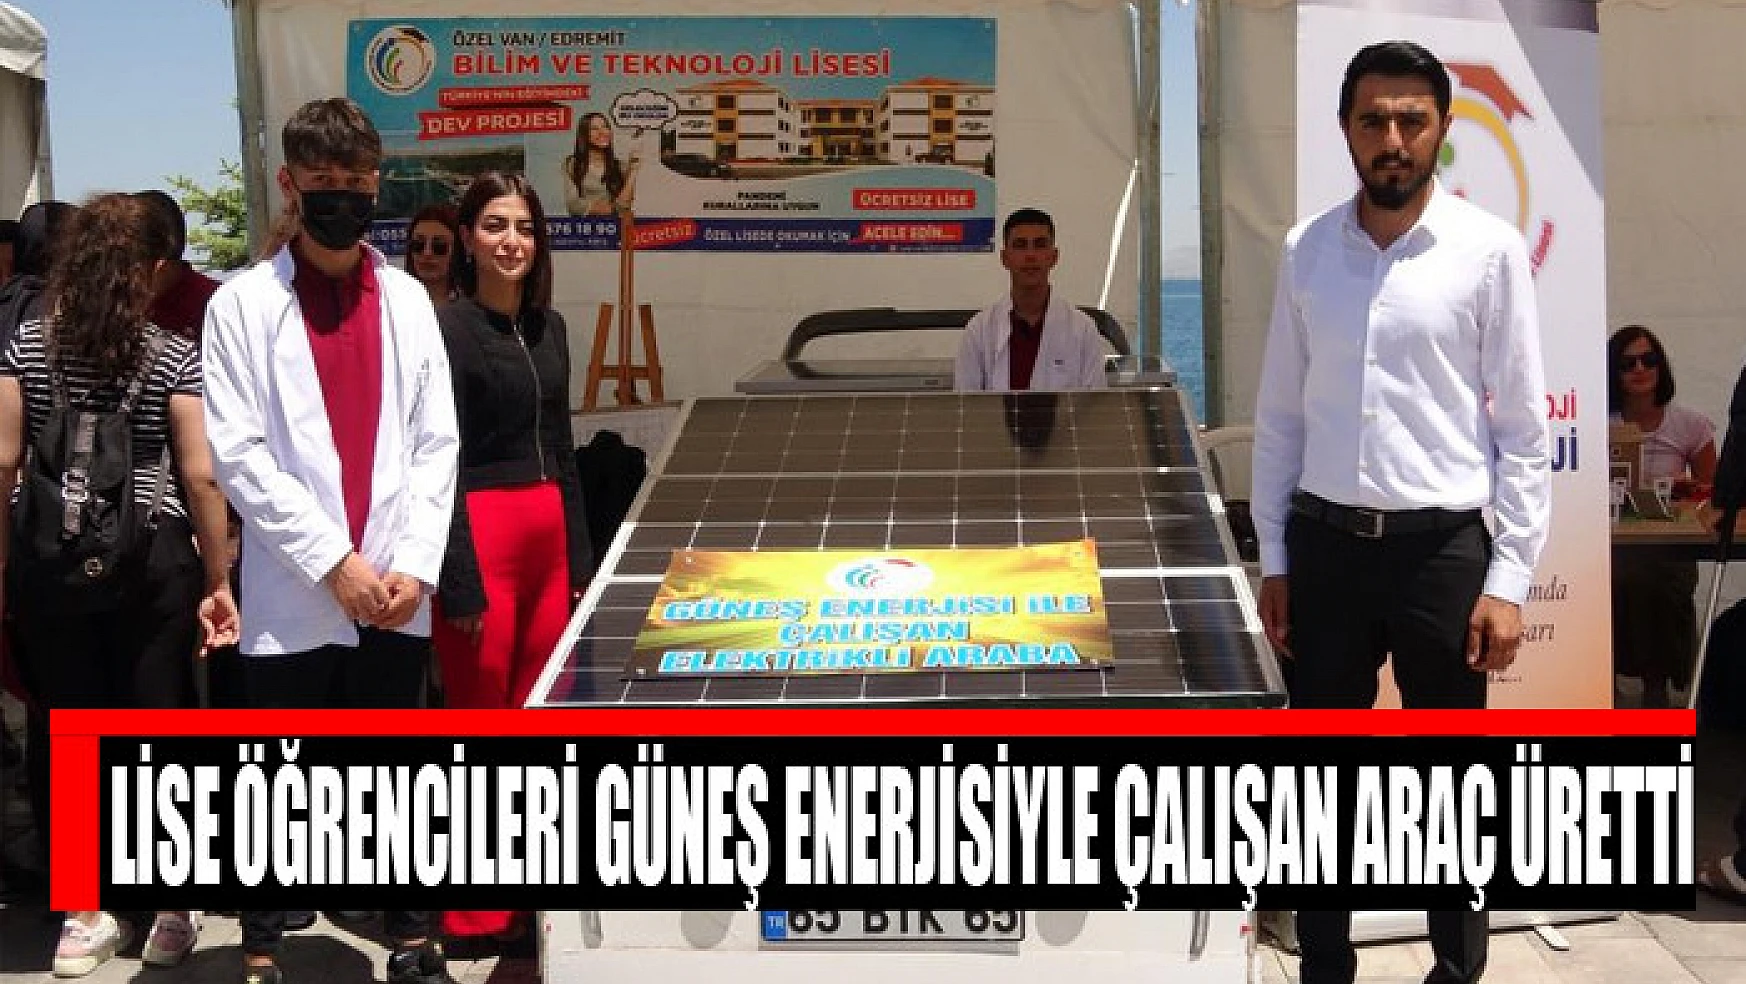 Lise öğrencileri güneş enerjisiyle çalışan araç üretti